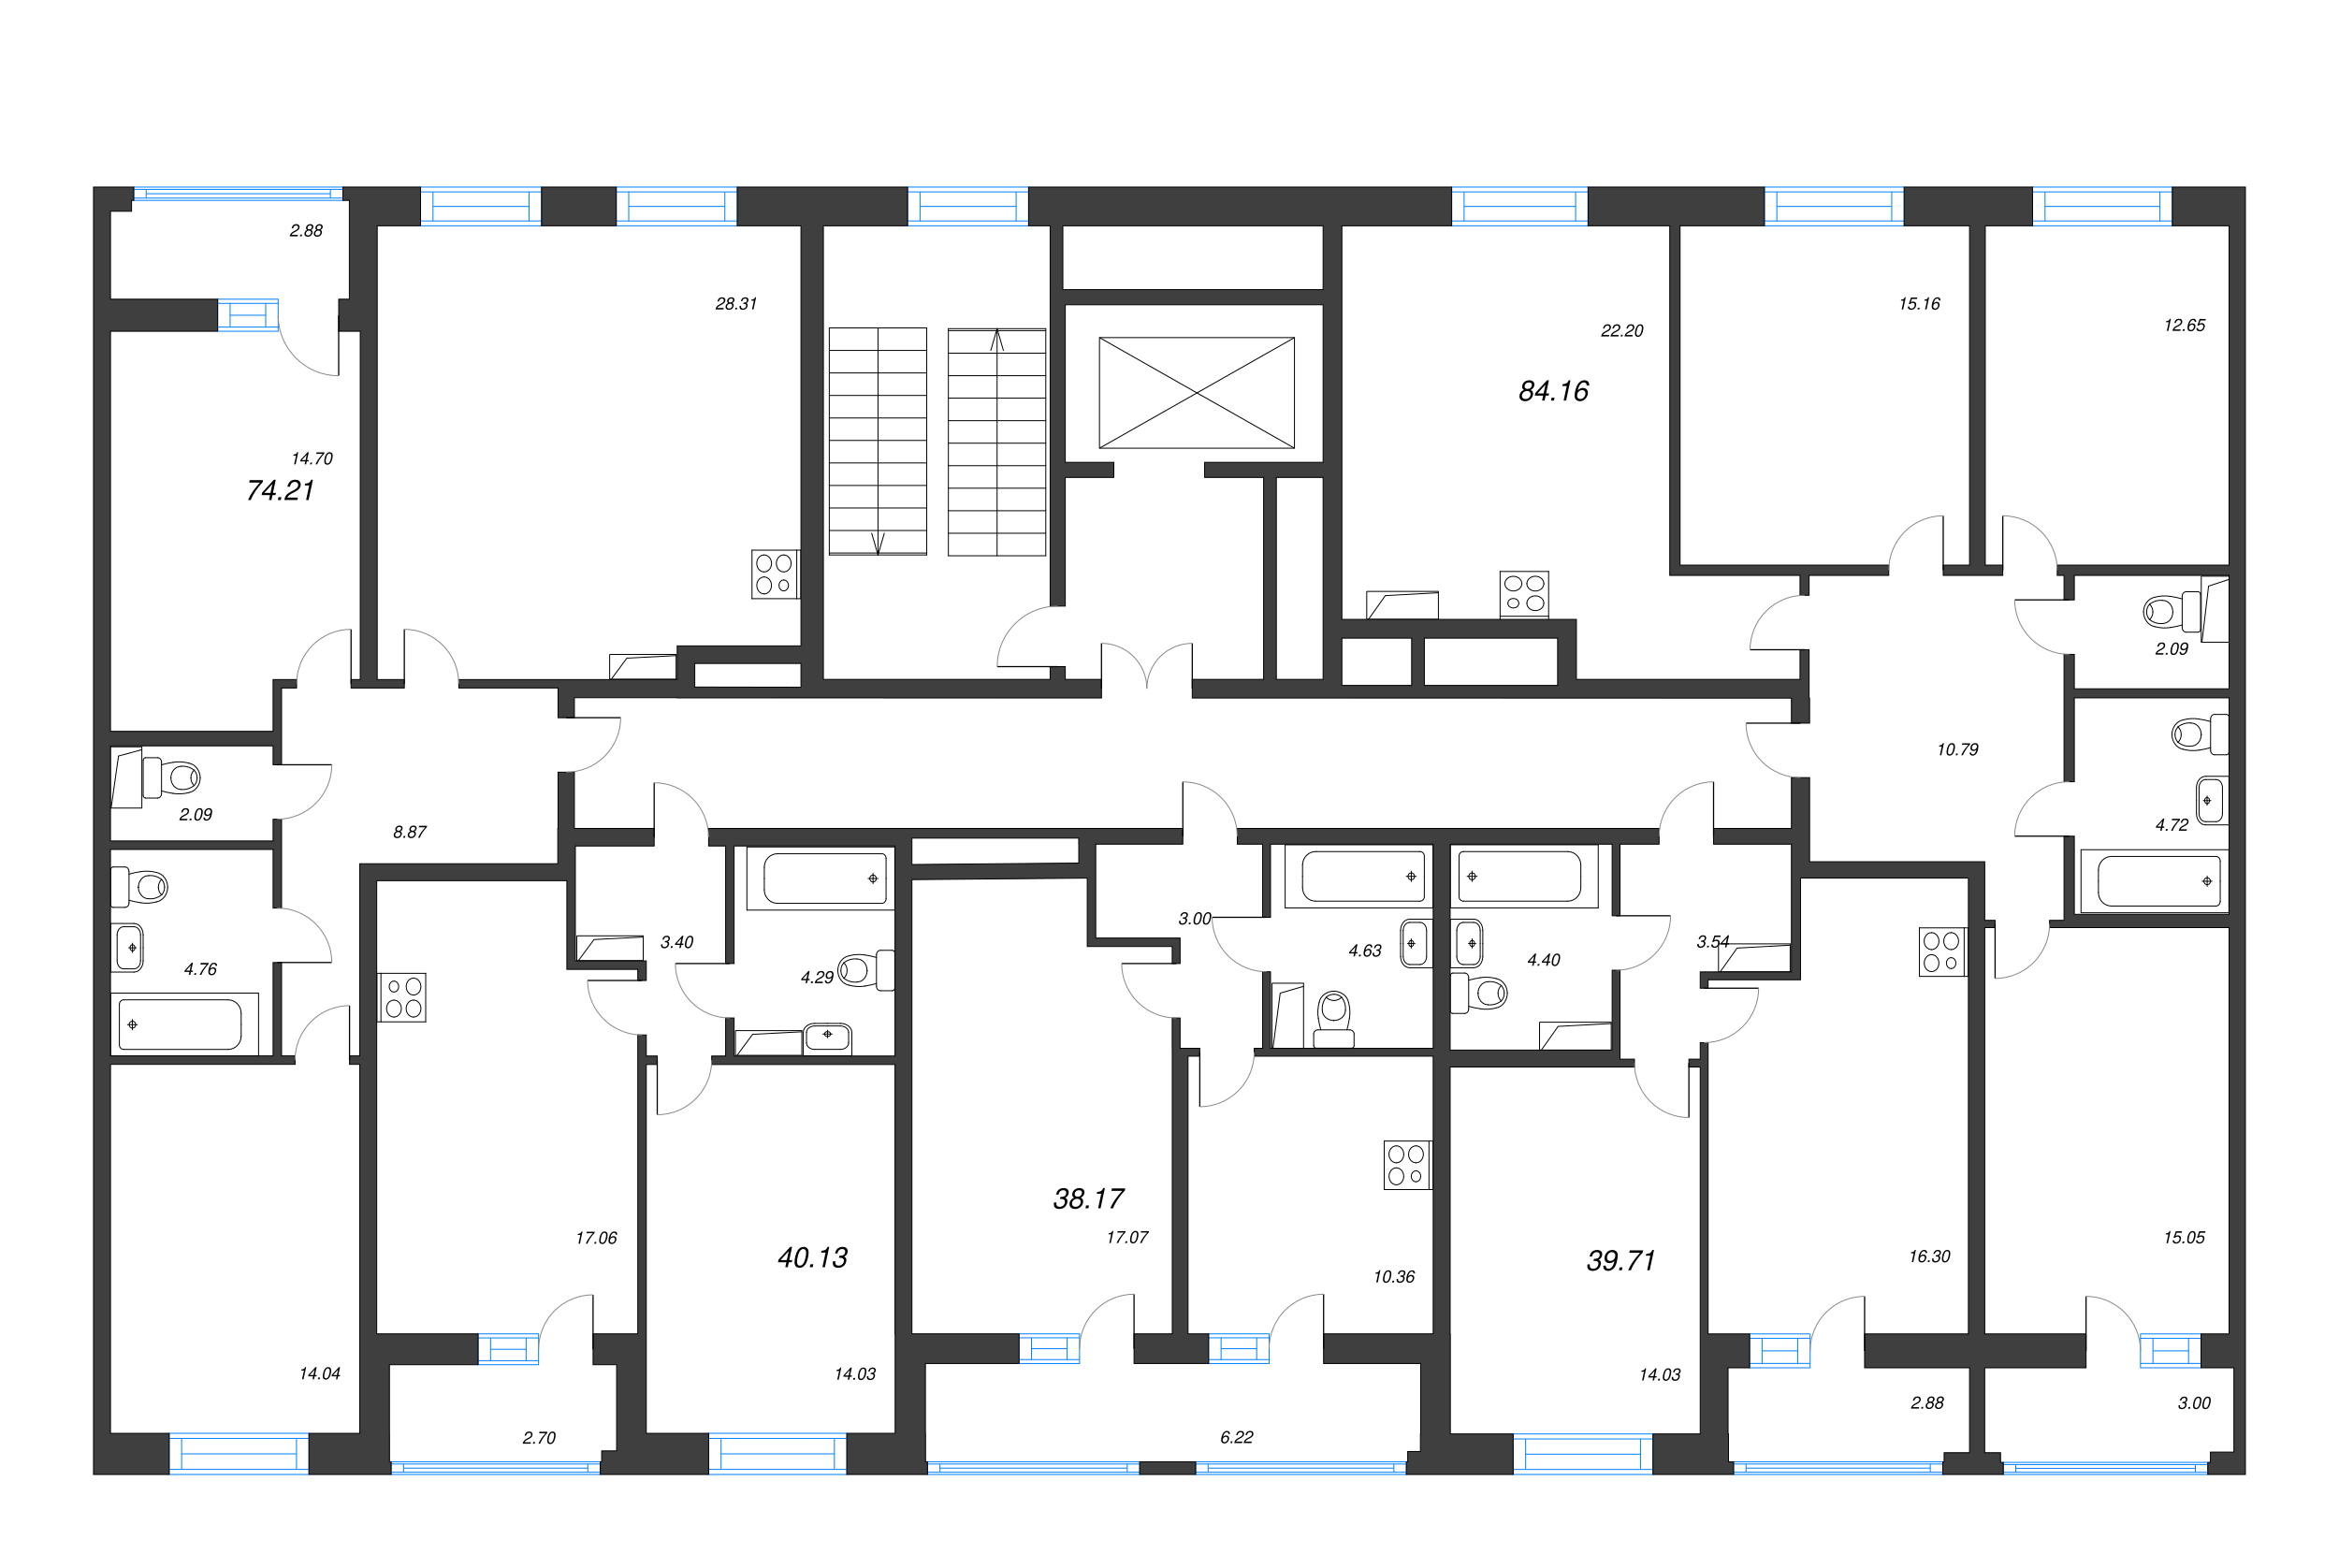 2-комнатная (Евро) квартира, 39.71 м² в ЖК "Аквилон Leaves" - планировка этажа